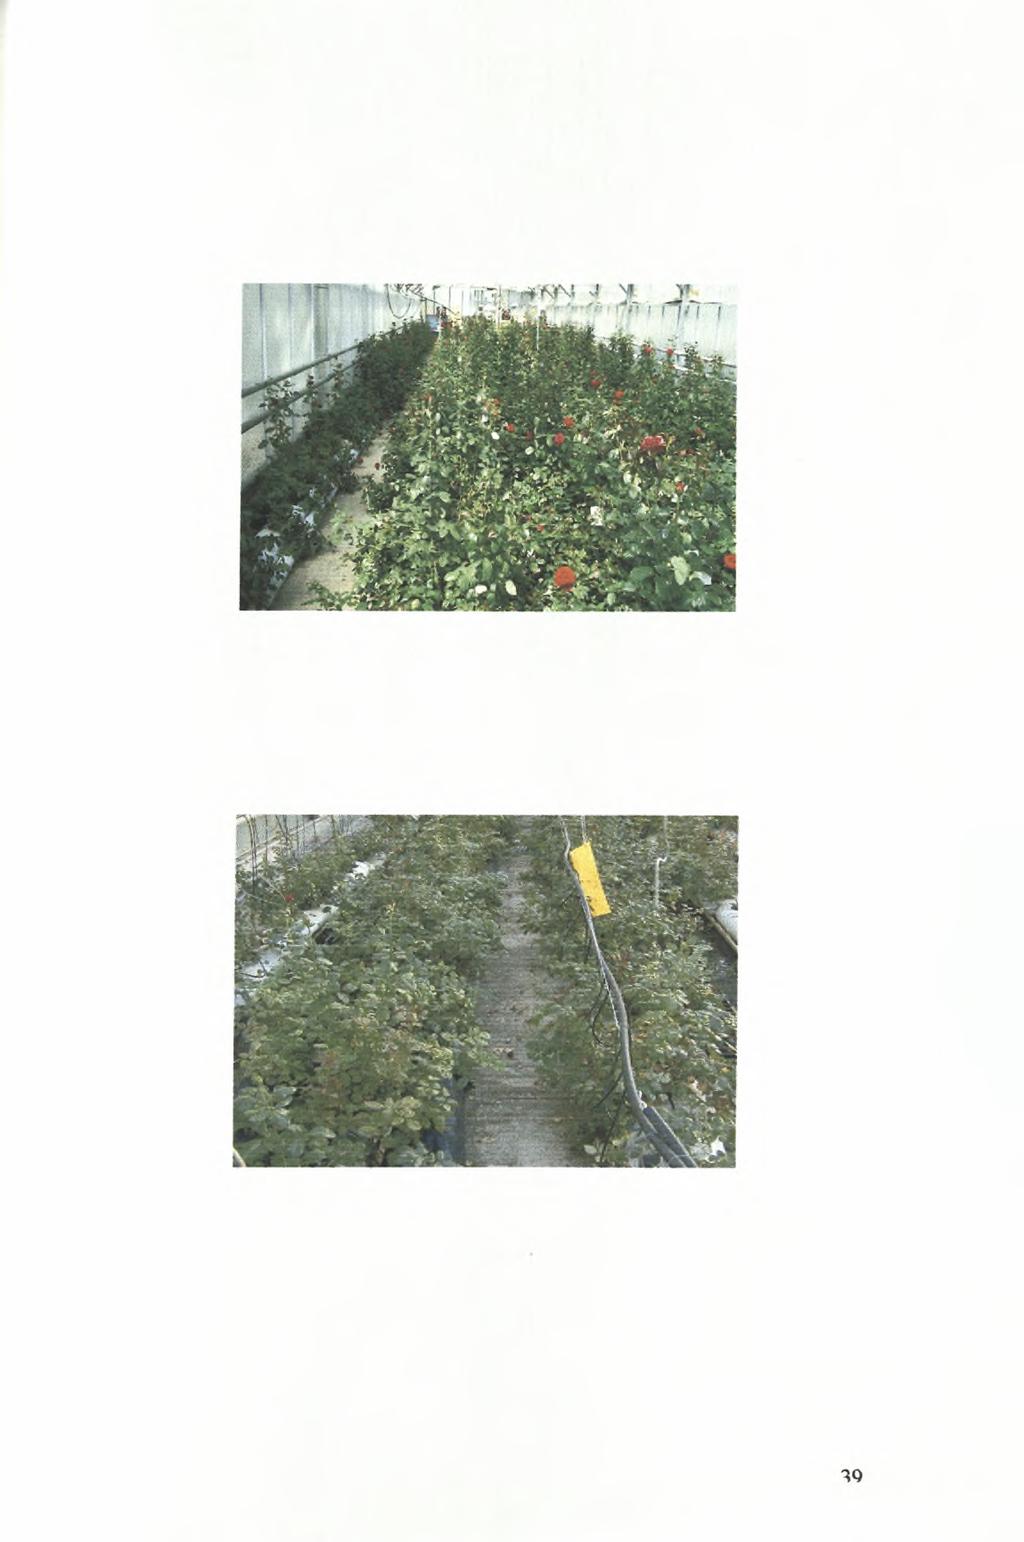 Εικόνα 6.3.2: Άποψη της υδροπονικής καλλιέργειας τριανταφυλλιάς.